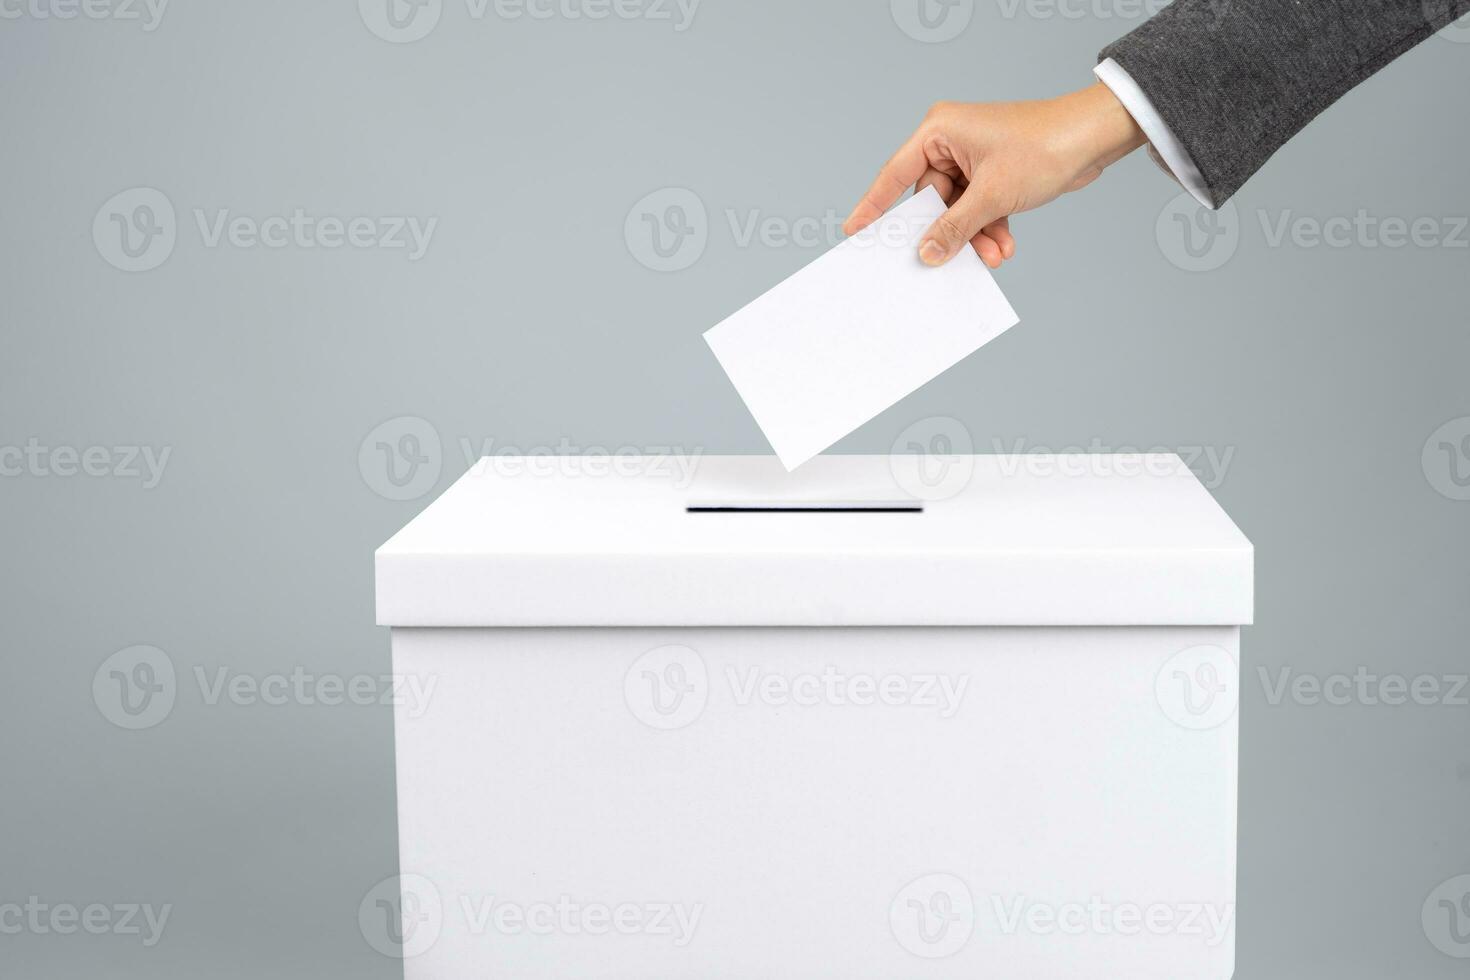 man sätta hans rösta in i valsedel låda, närbild. de begrepp av fri demokratisk rösta val. foto